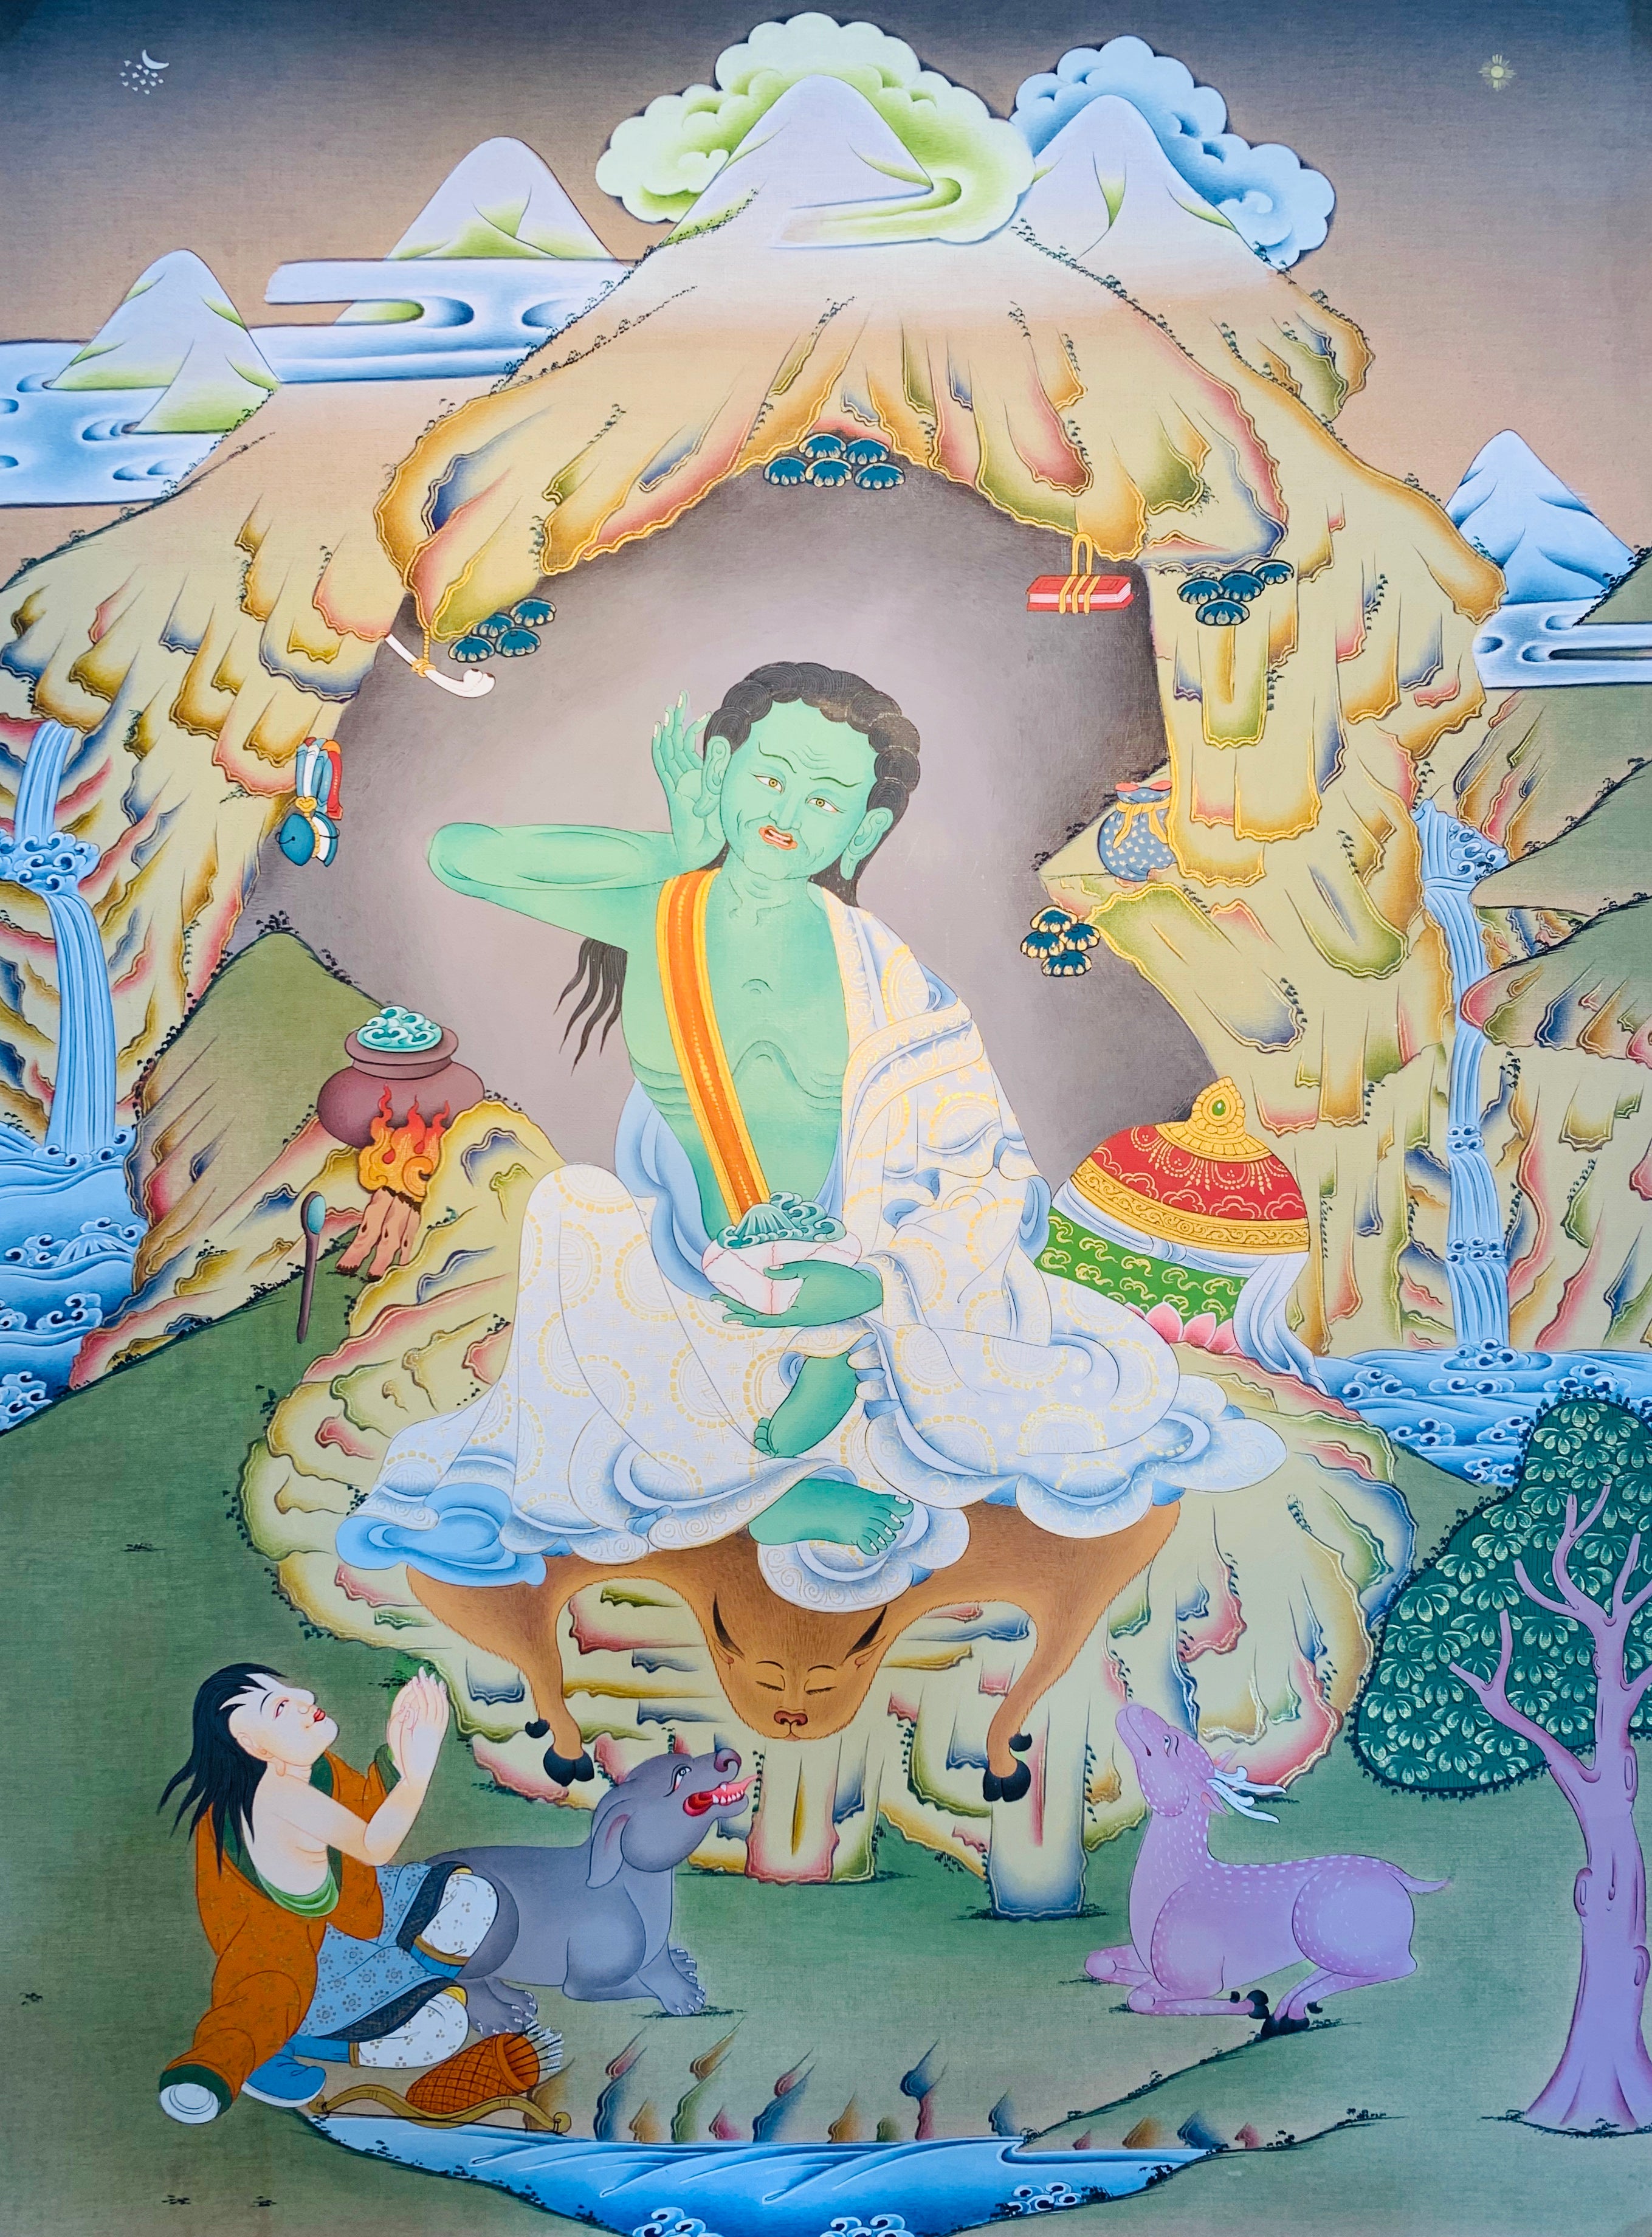 Milarepa Thangka Painting 50*40 - The Thangka